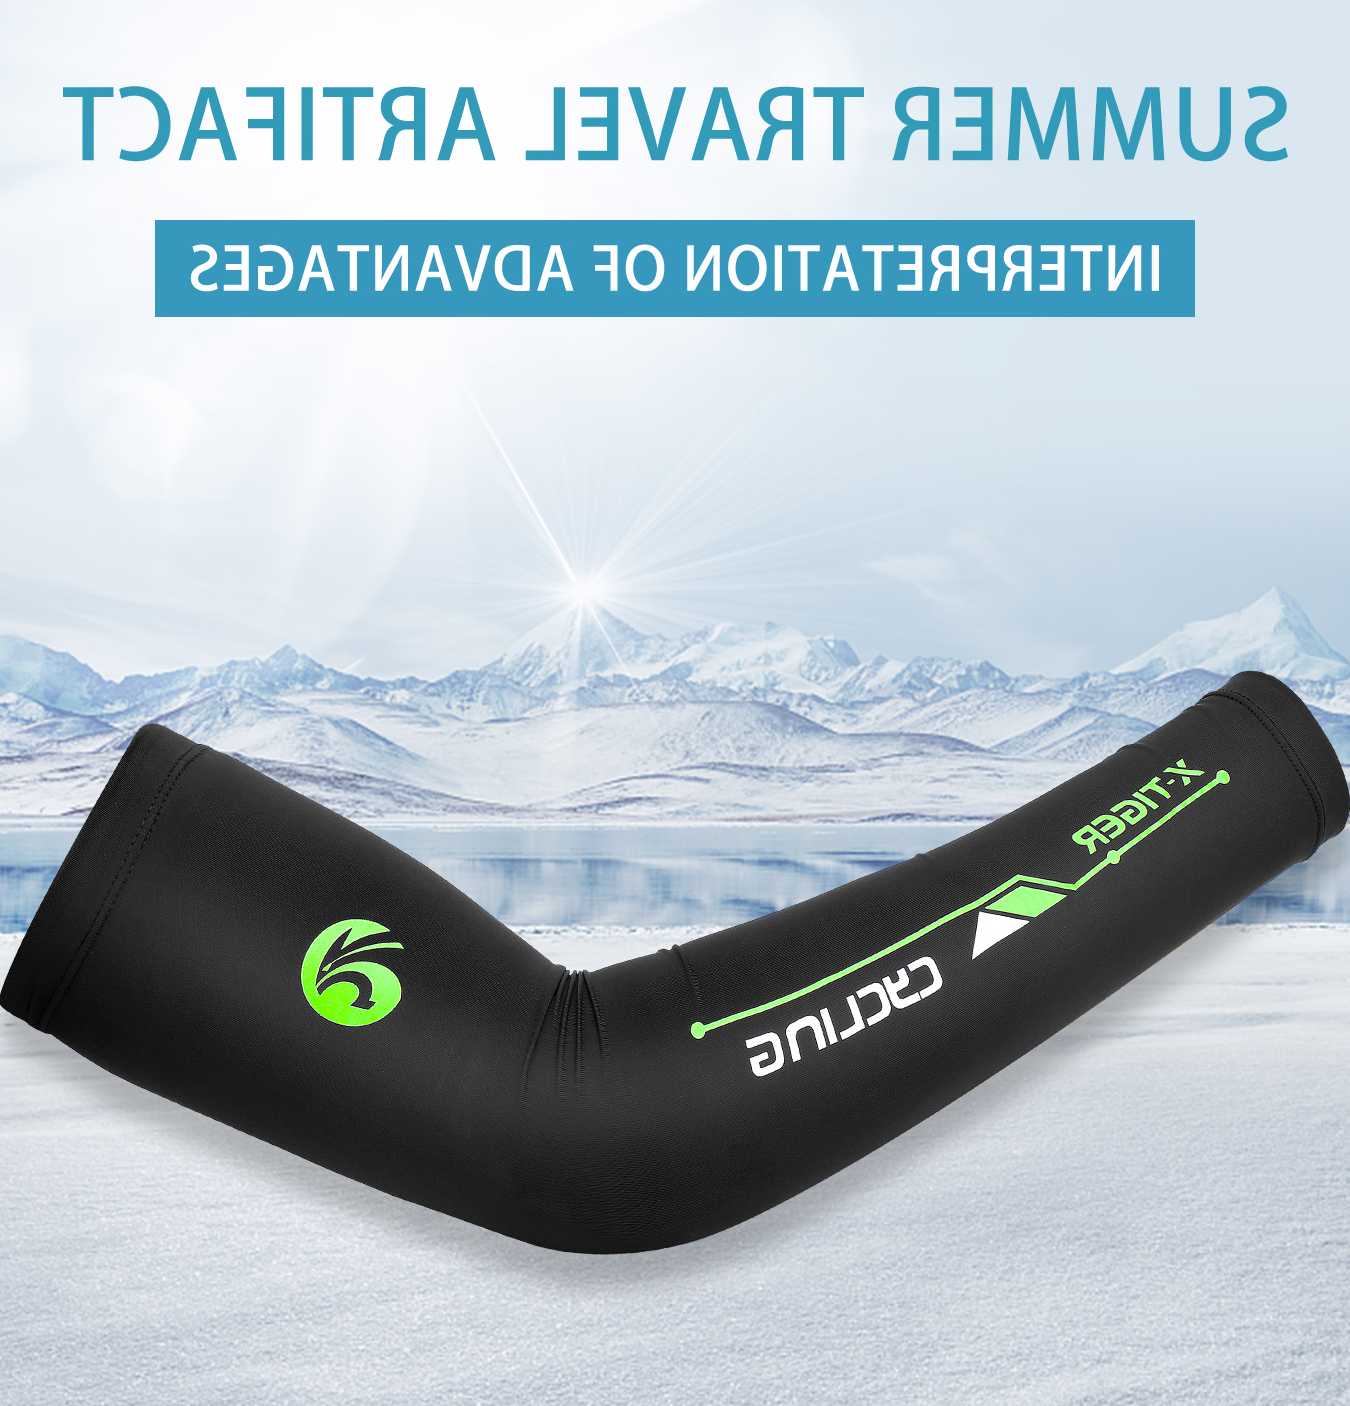 Tanio Rękaw kolarski X-Tiger UV Running Ice Fabric - ochrona i kom… sklep